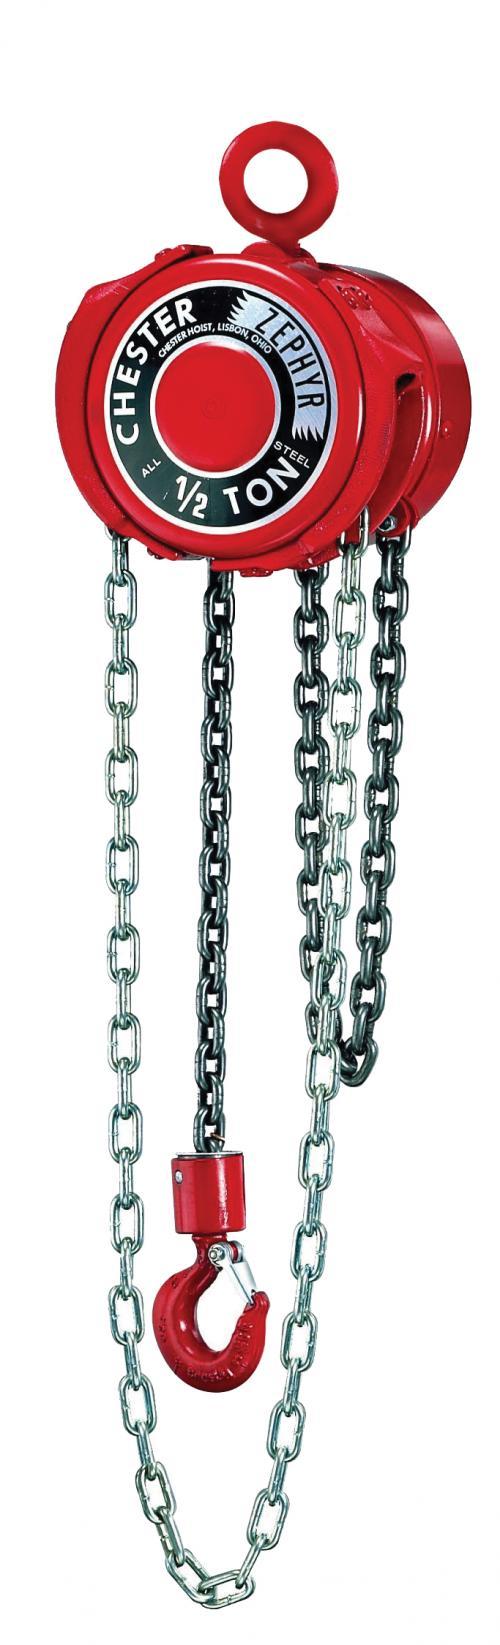 8 Ton Chester Zephyr | Manual Chain Hoist | Uescocranes.com